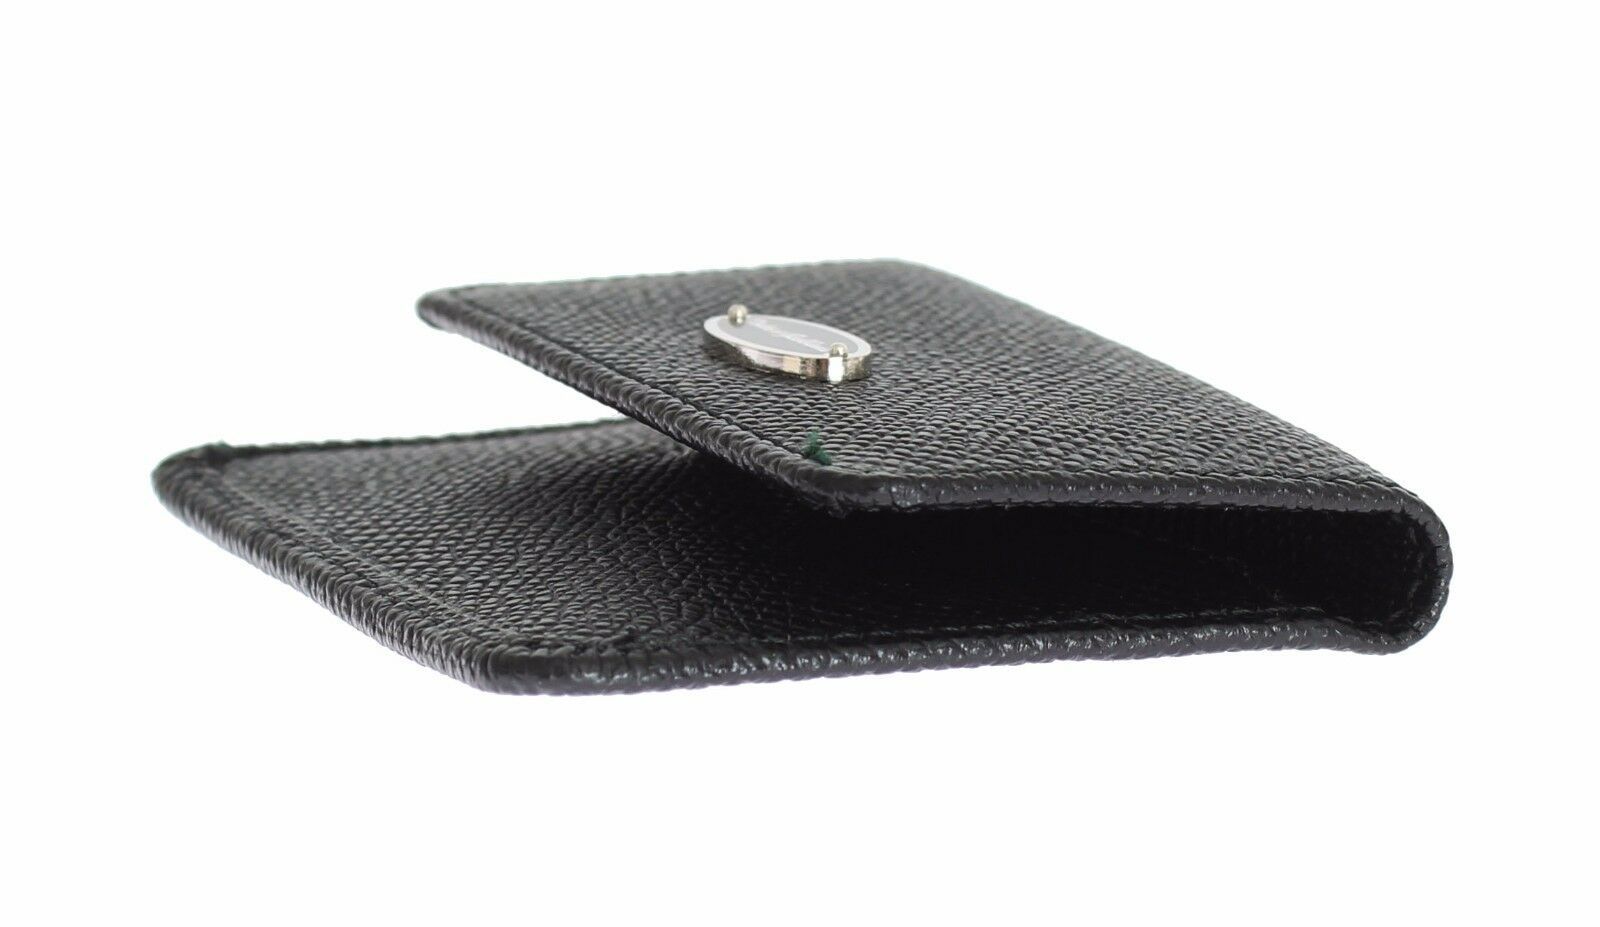 Black Dauphine Leather Condom Case Holder